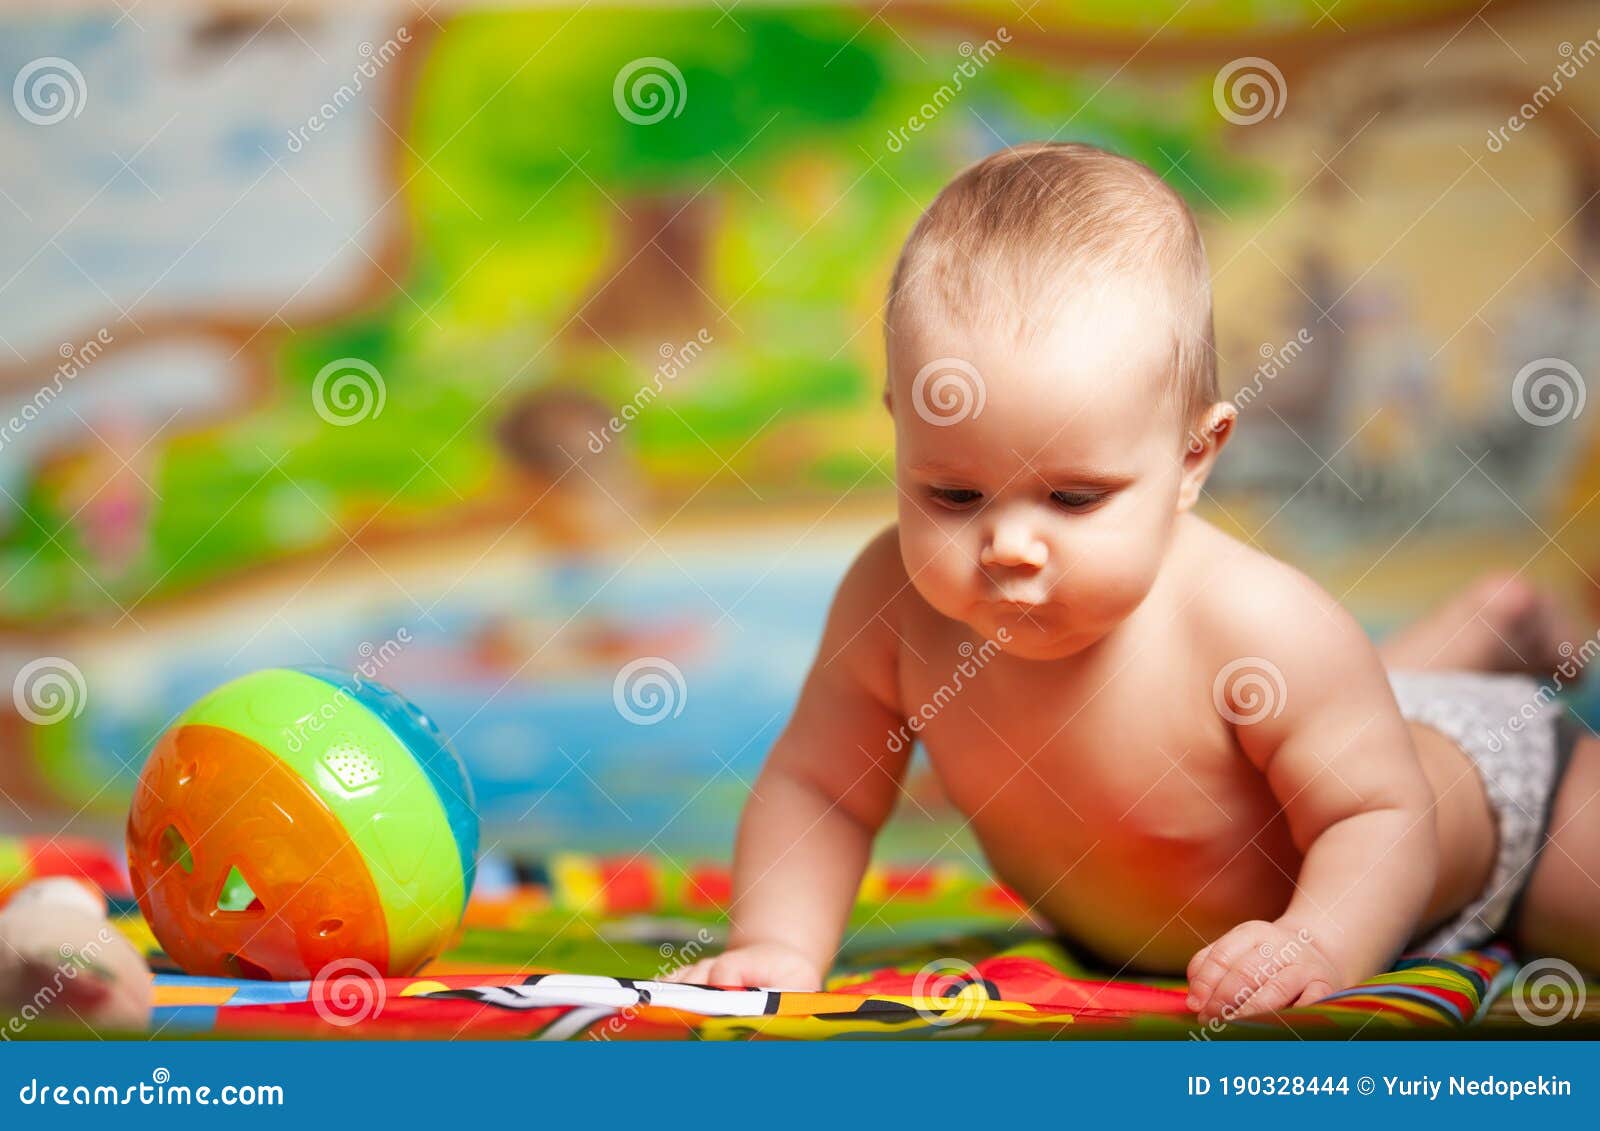 一个九个月大的婴儿，把绑匪玩的团团转！ | 一个九个月大的婴儿，把绑匪玩的团团转！ #电影解说 #搞笑 | By Insta News